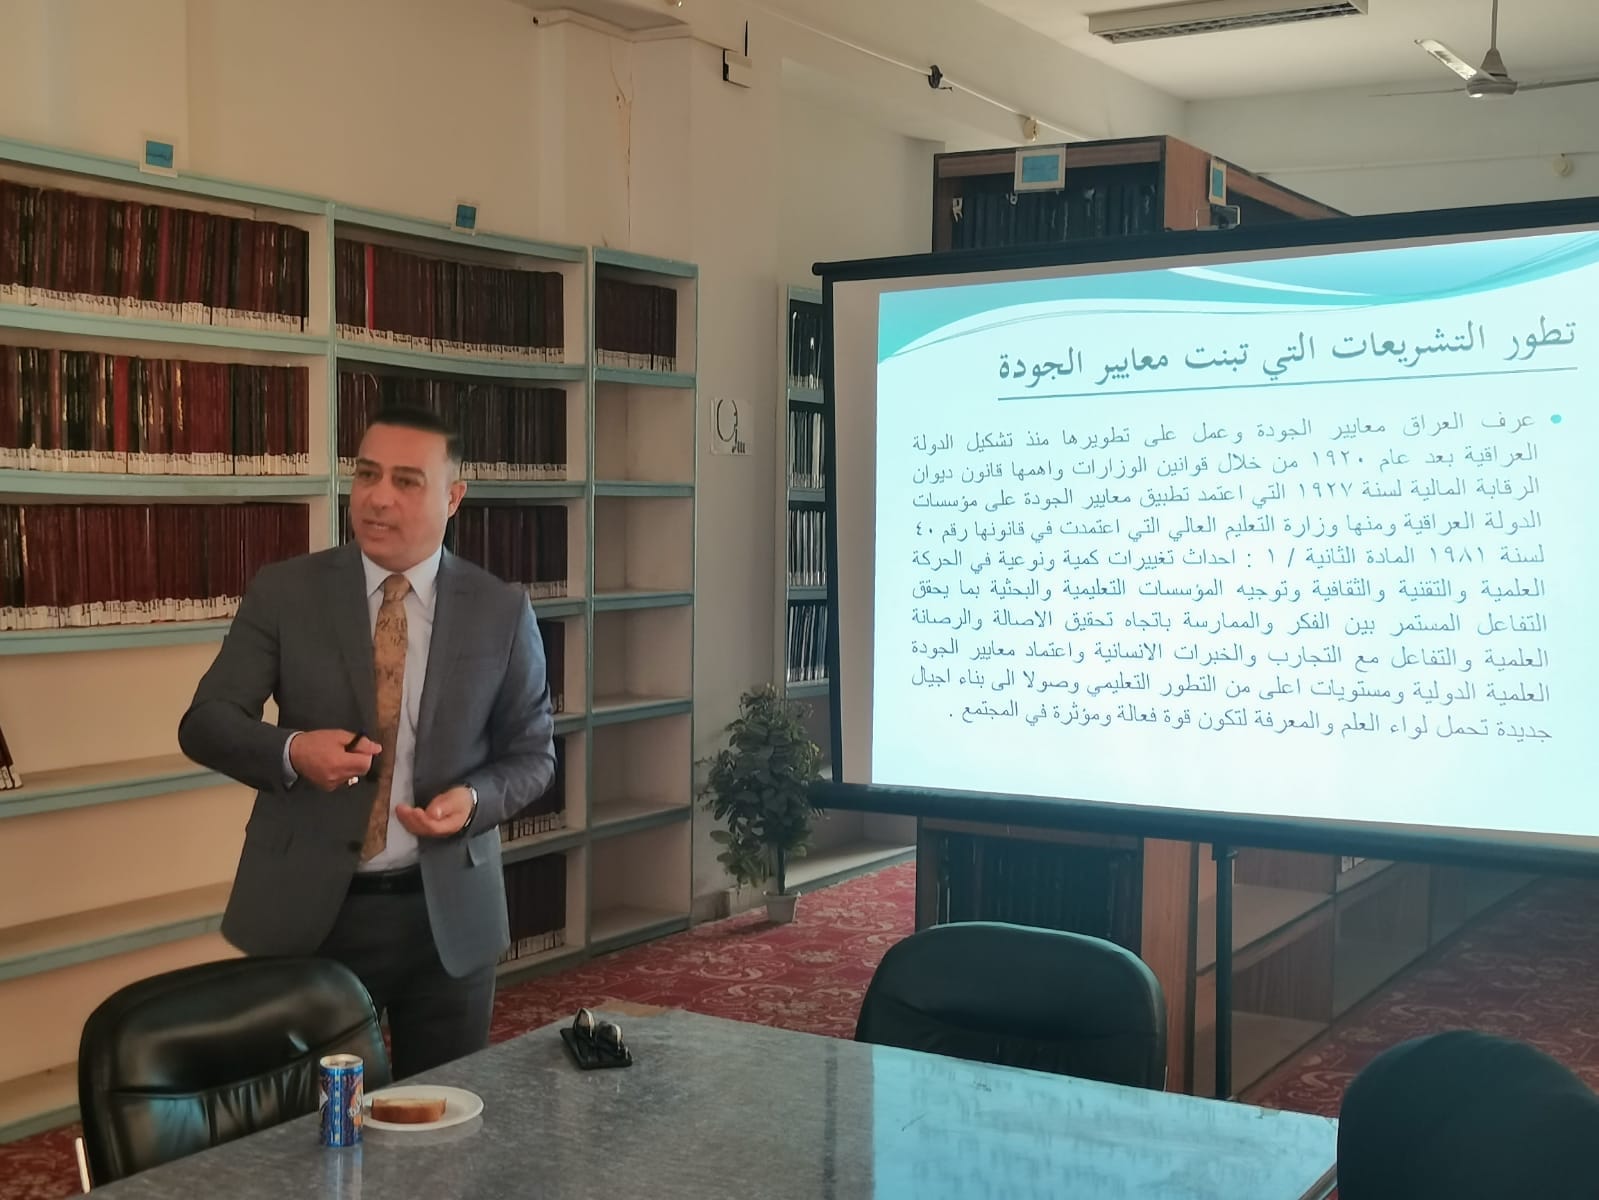 ندوة بعنوان التنظيم القانوني لمعايير الجودة في المكتبات الجامعية العراقية